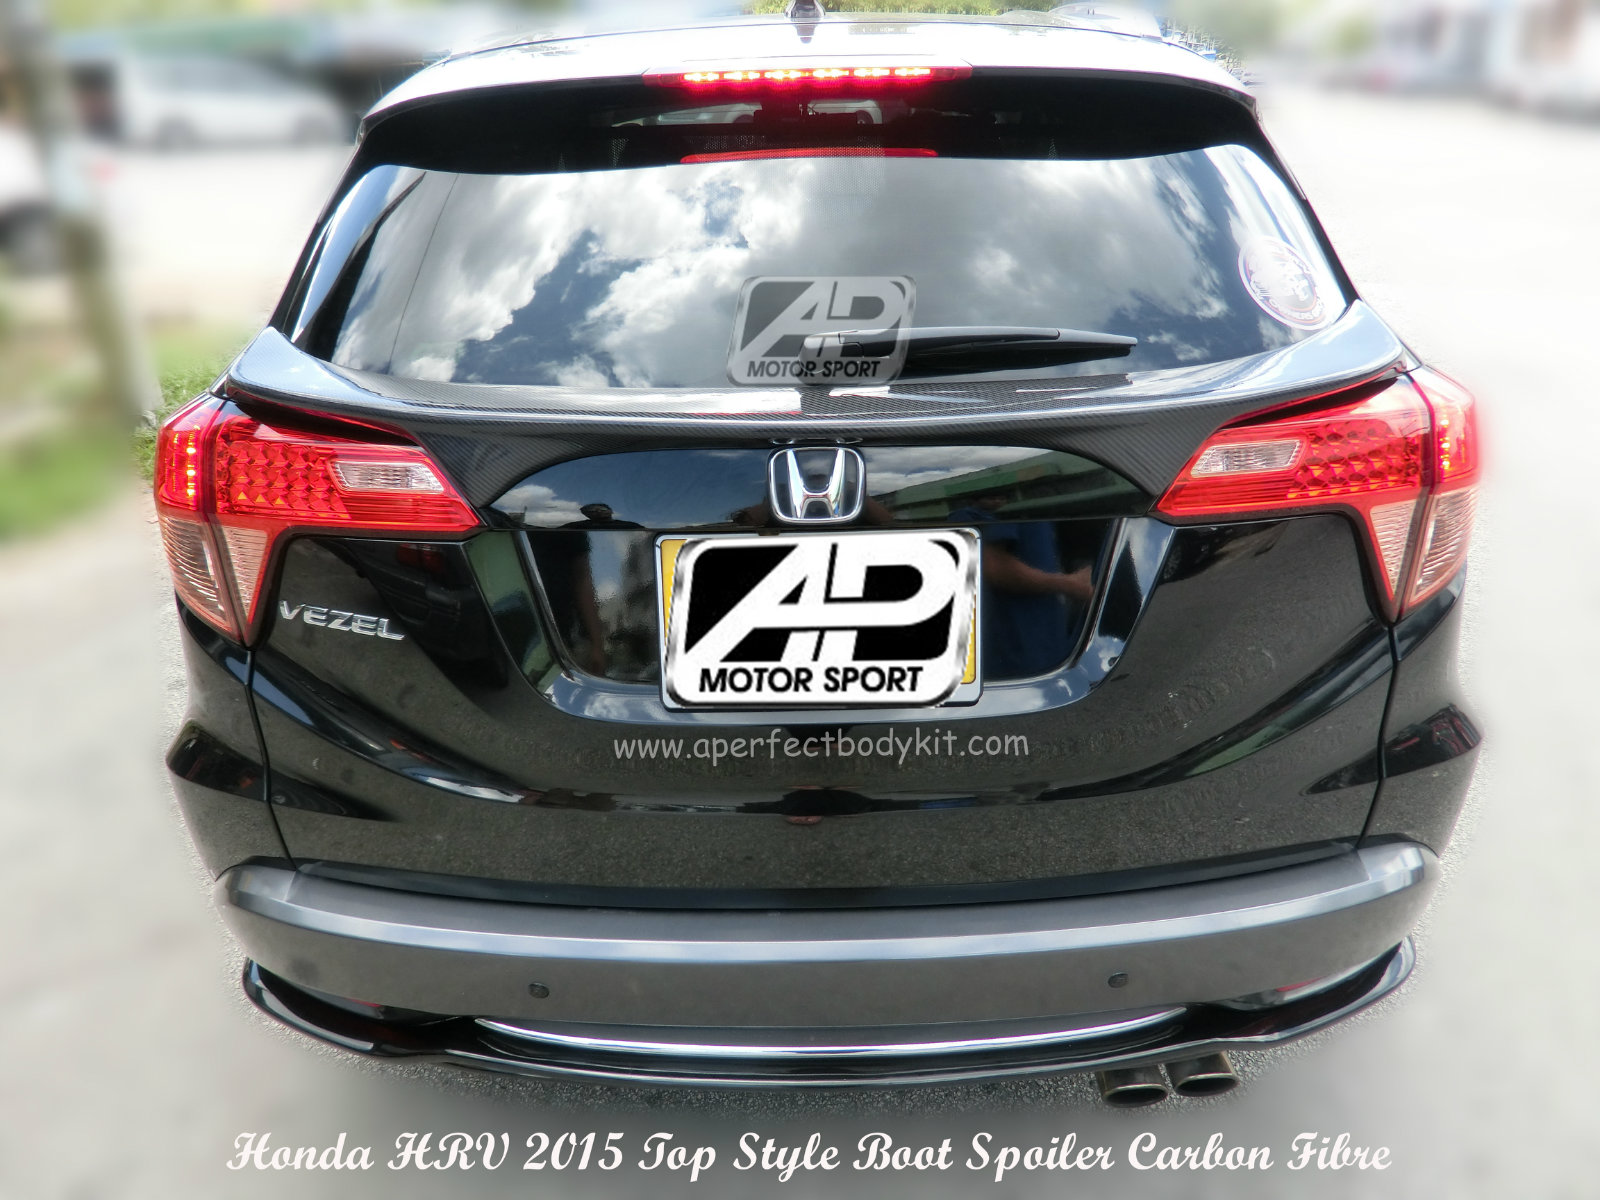 Honda HRV / Vezel 2015 Top Style Rear Boot Spoiler (Carbon F